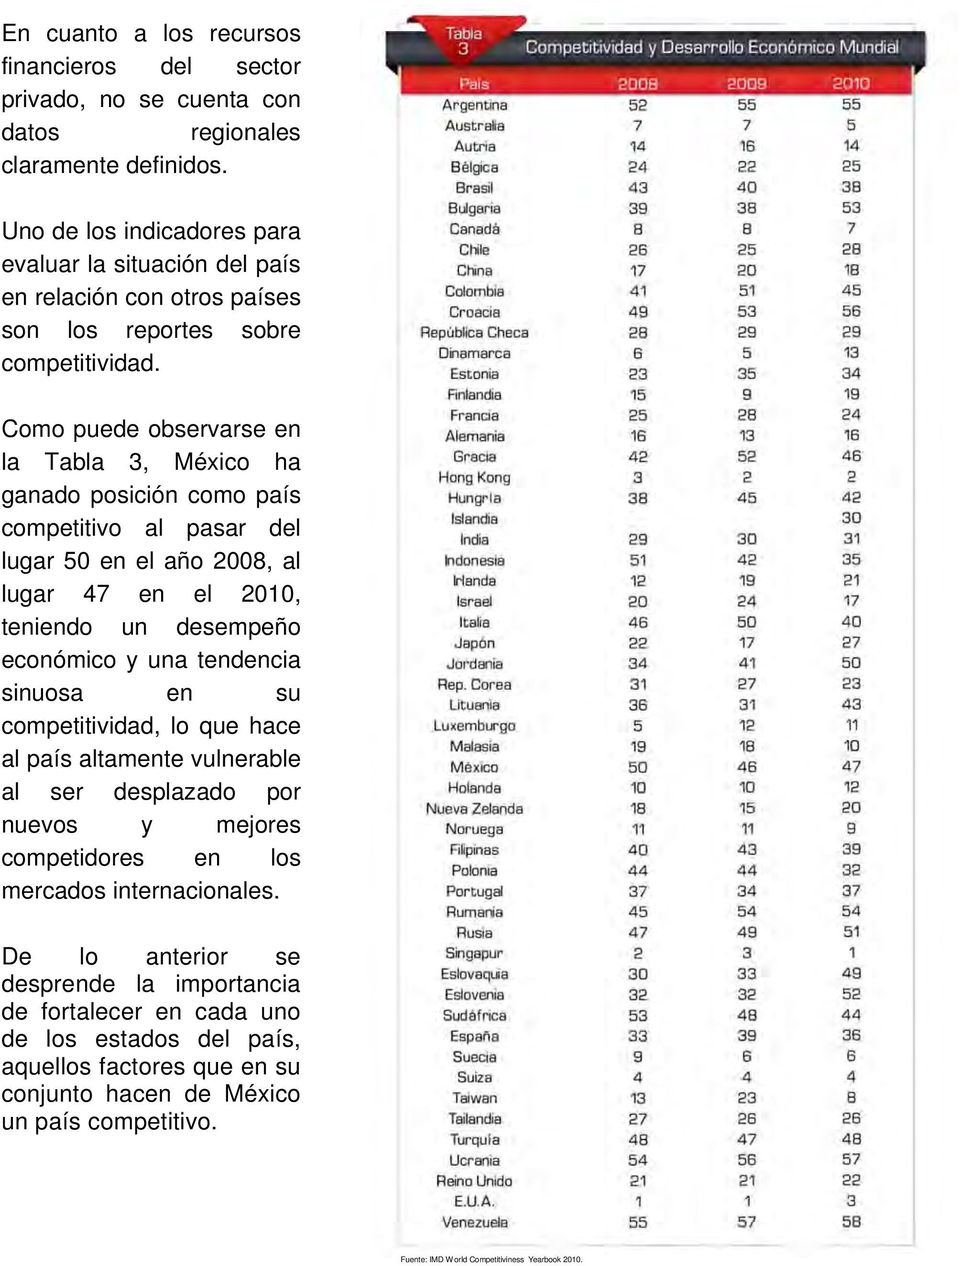 Como puede observarse en la Tabla 3, México ha ganado posición como país competitivo al pasar del lugar 50 en el año 2008, al lugar 47 en el 2010, teniendo un desempeño económico y una tendencia